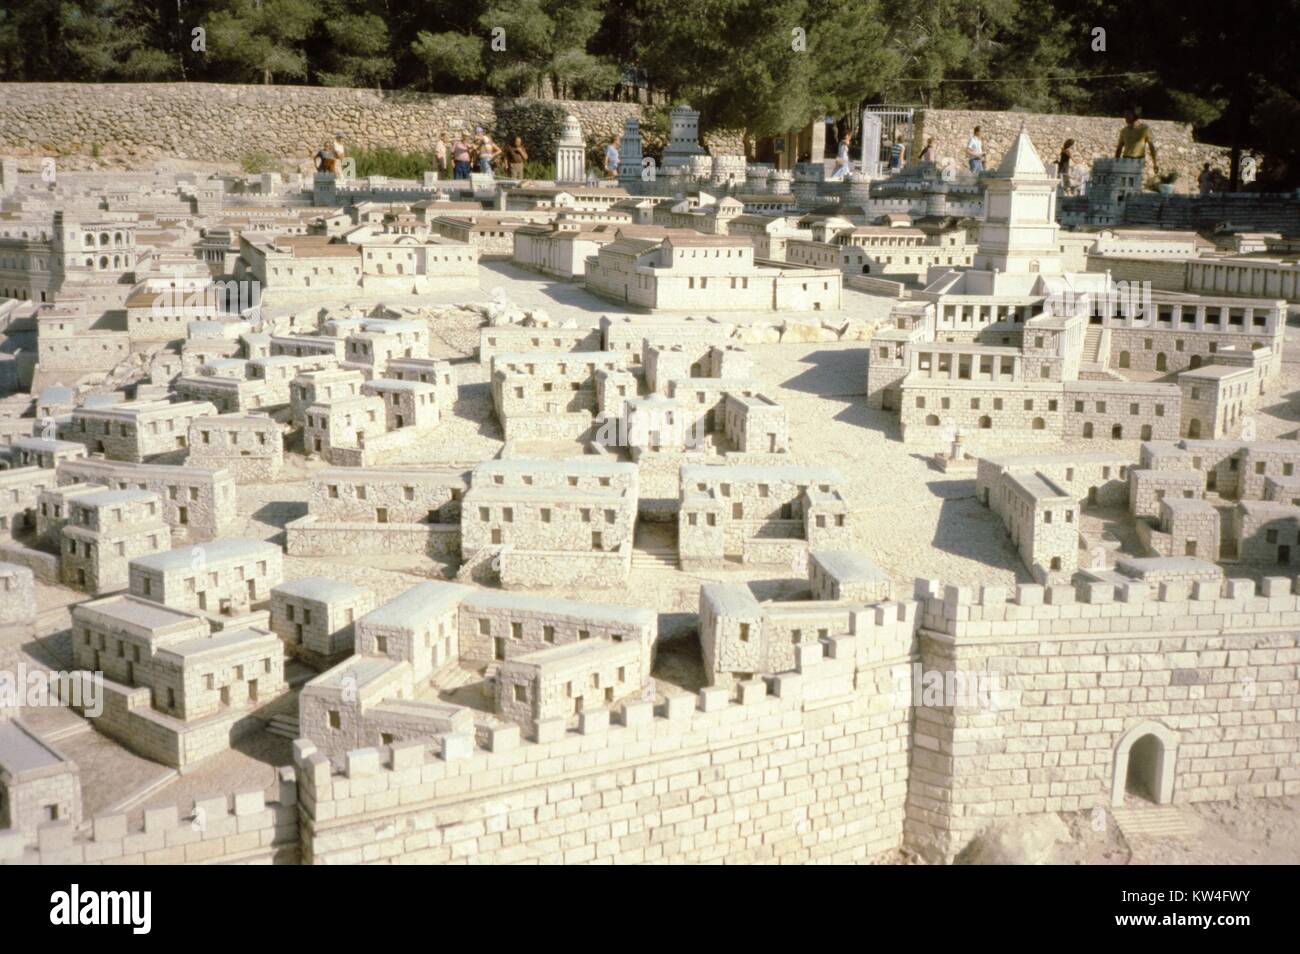 Holyland Modell von Jerusalem, ein Modell der Stadt Jerusalem, wie sie in den biblischen Zeiten erschienen sind, Jerusalem, Israel, 1975. Stockfoto